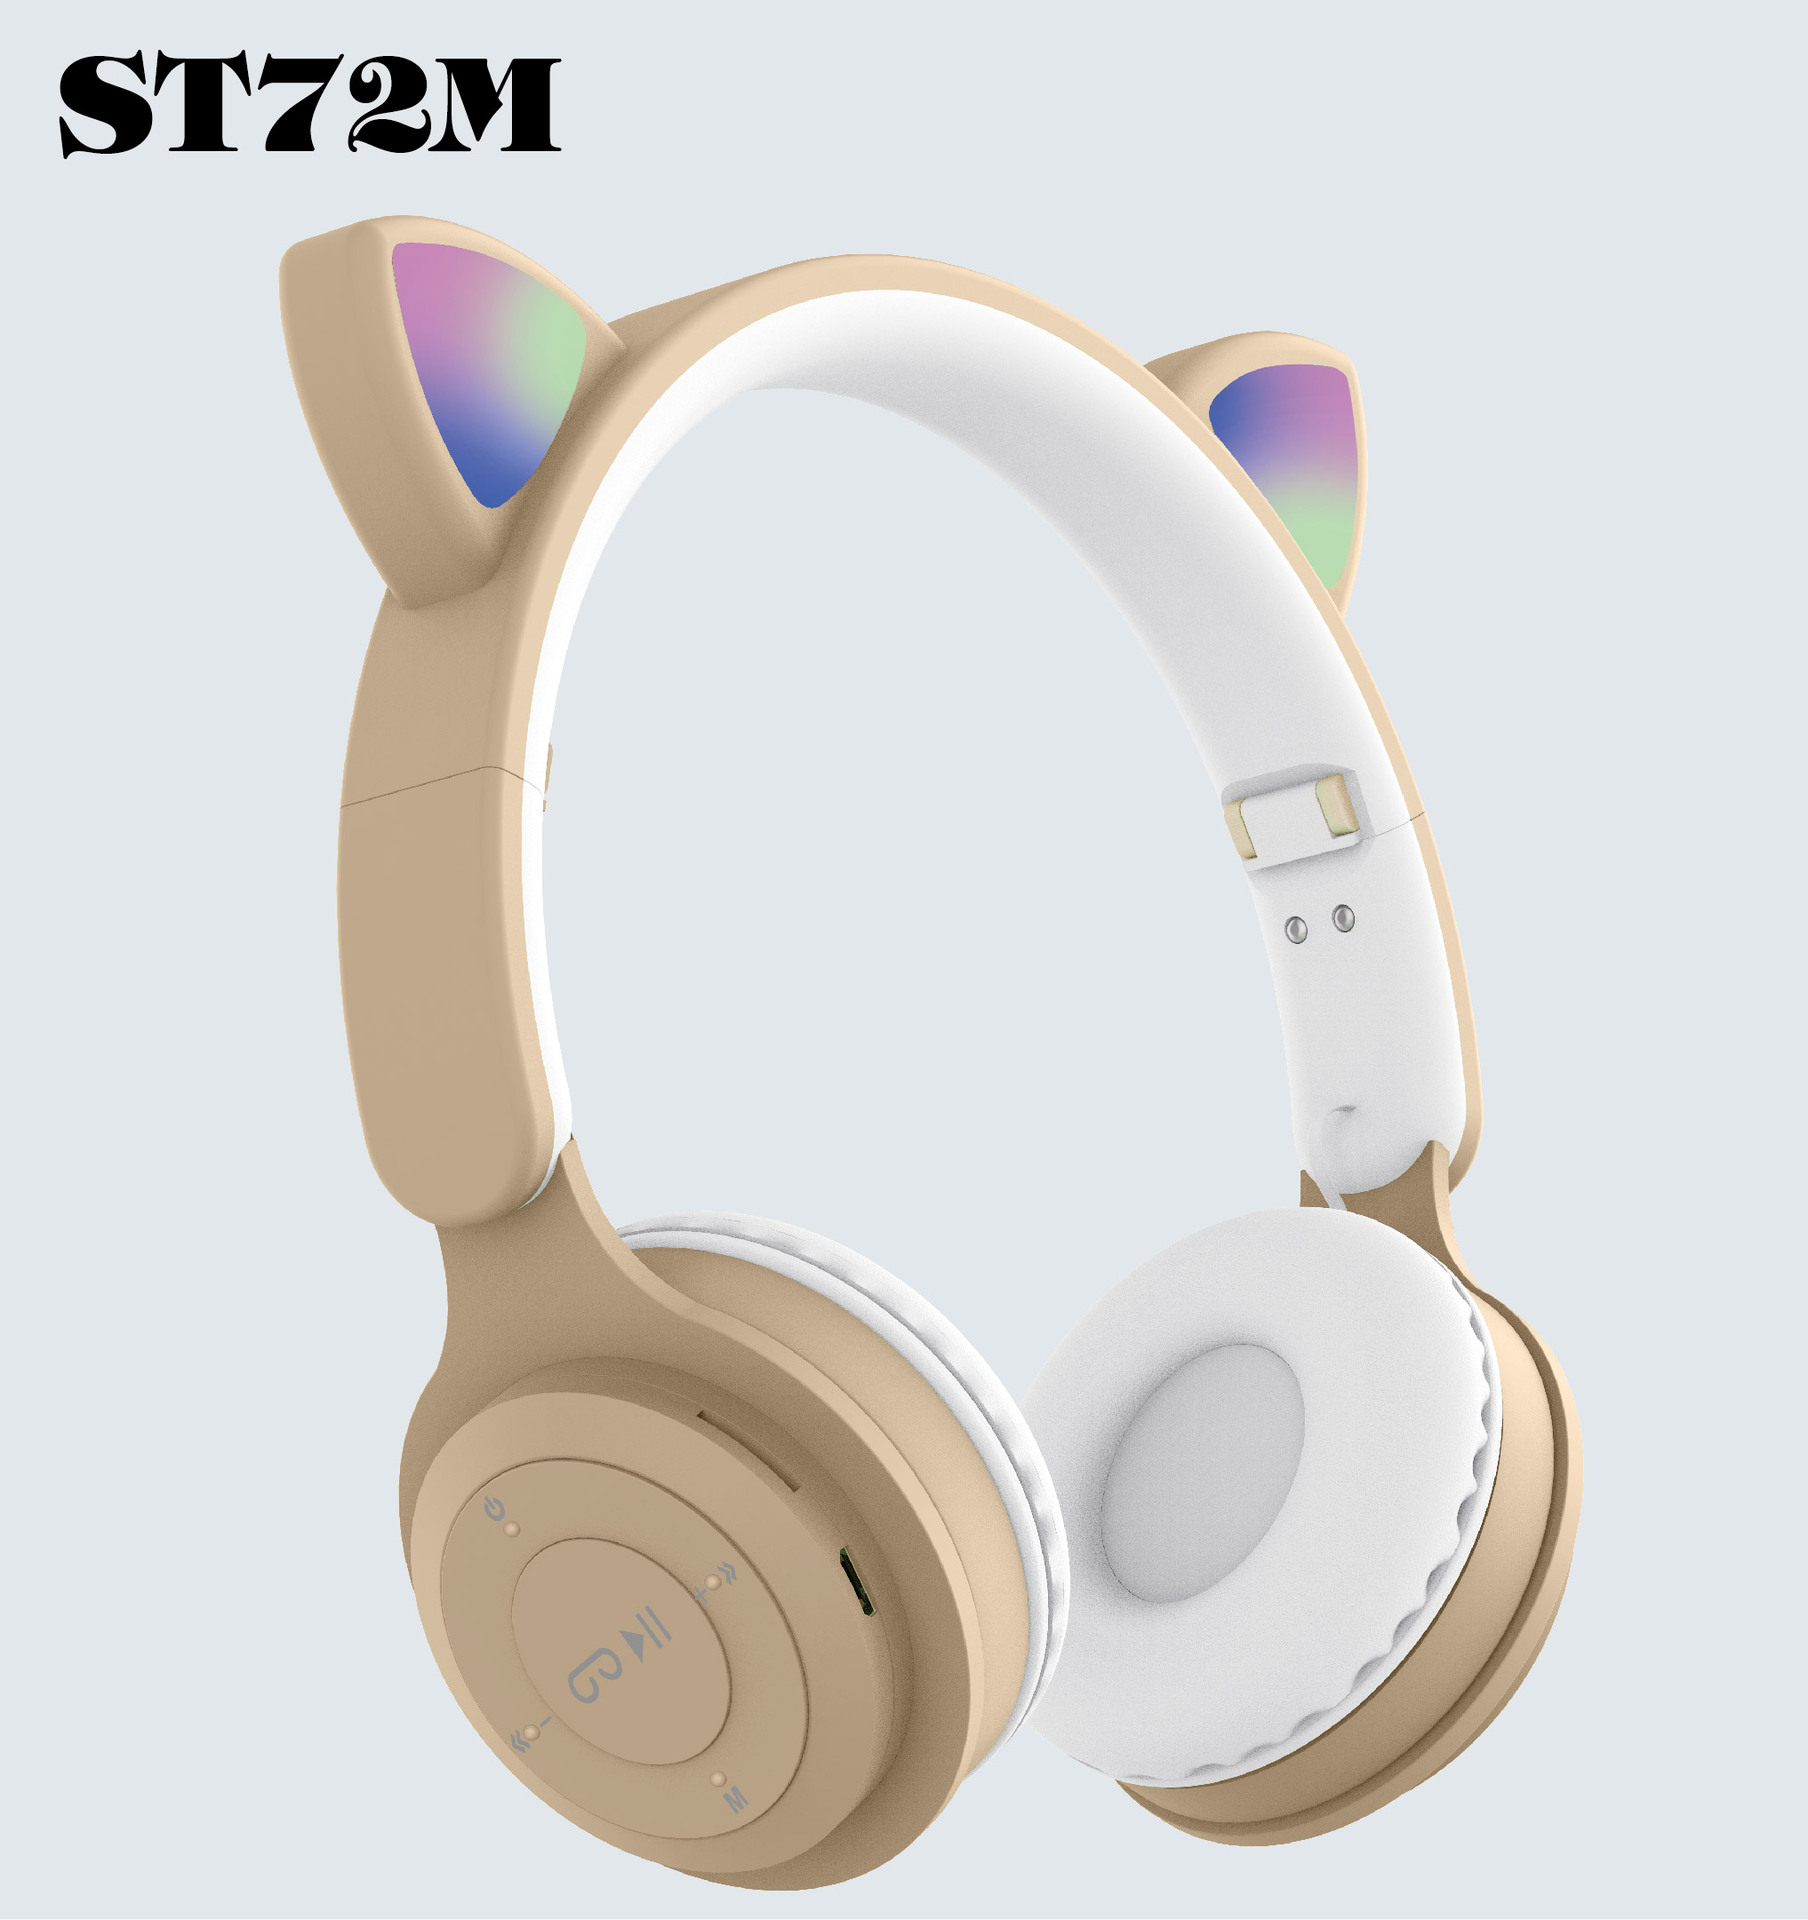 跨境新款头戴式无线蓝牙耳机ST72M 时尚猫耳可折叠插卡FM蓝牙耳机图